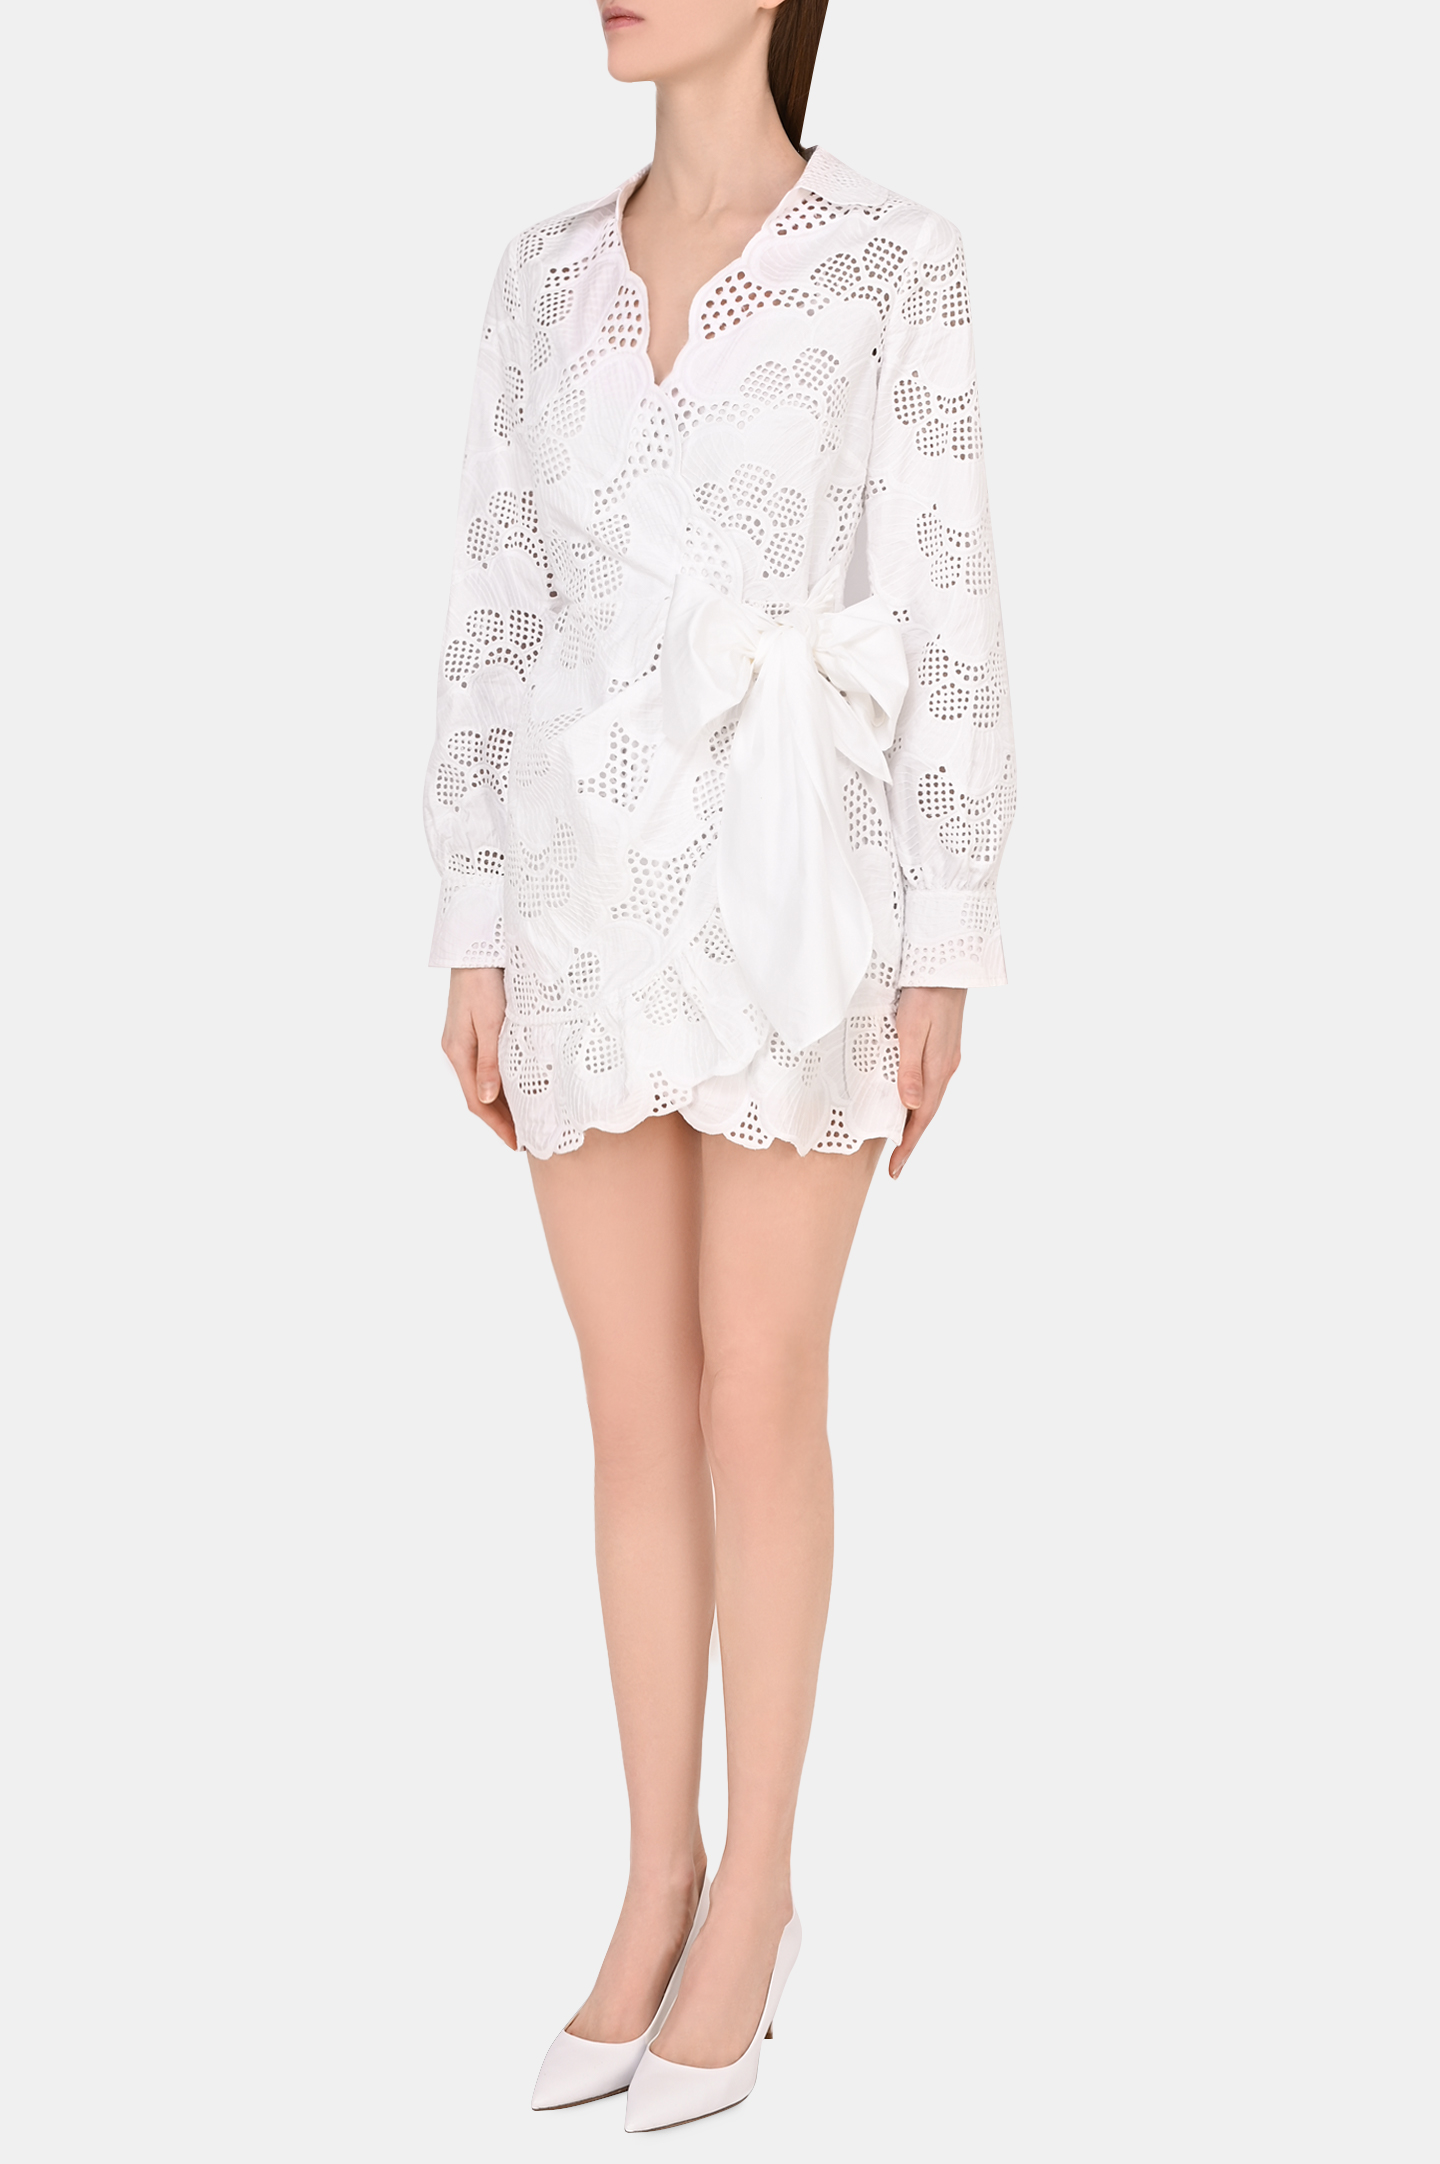 Платье SELF PORTRAIT RS22-154, цвет: Белый, Женский